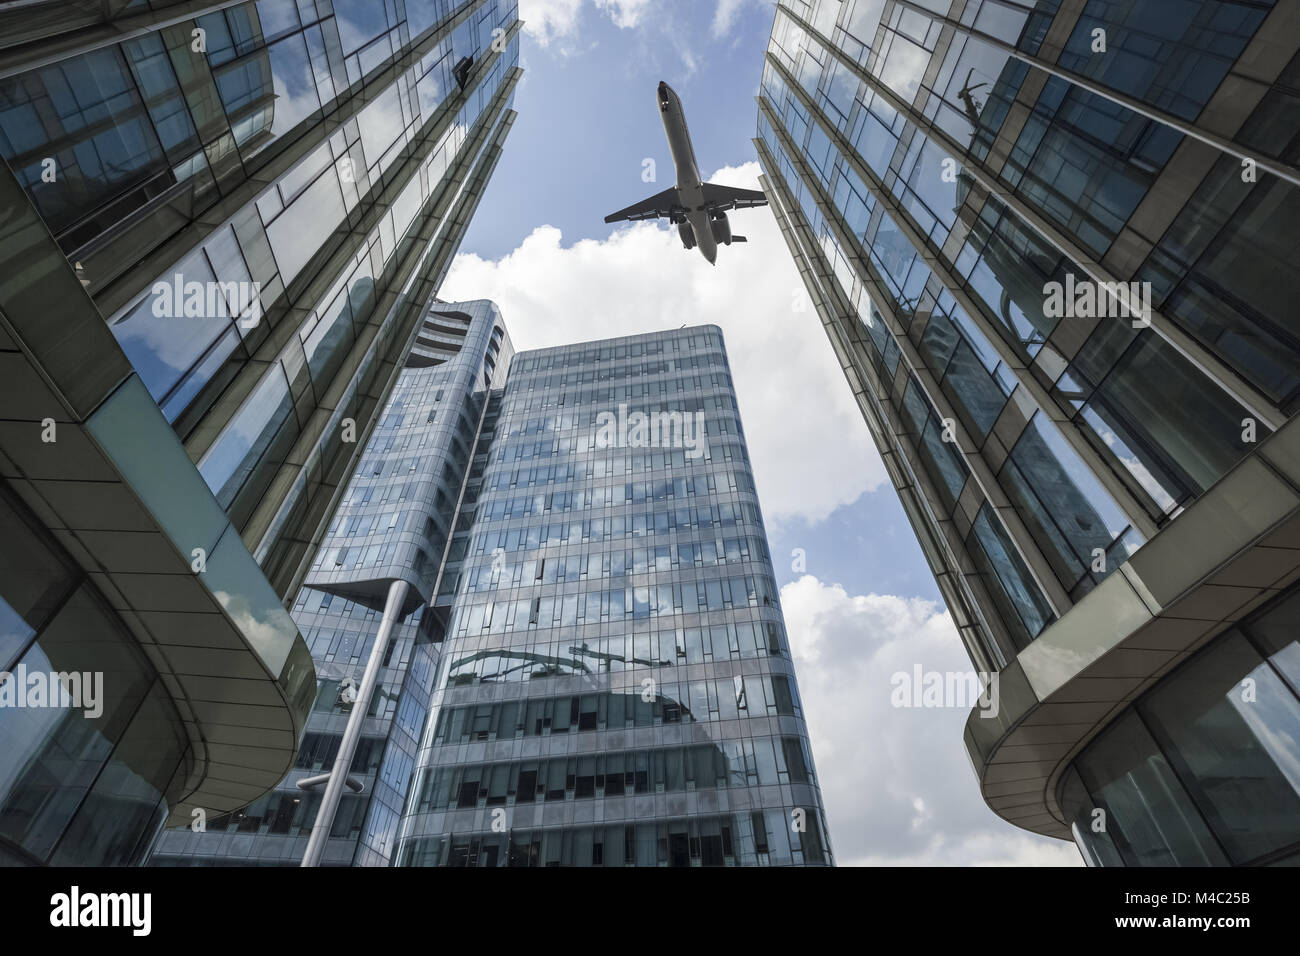 Avión voló por encima del edificio moderno de vidrio Foto de stock